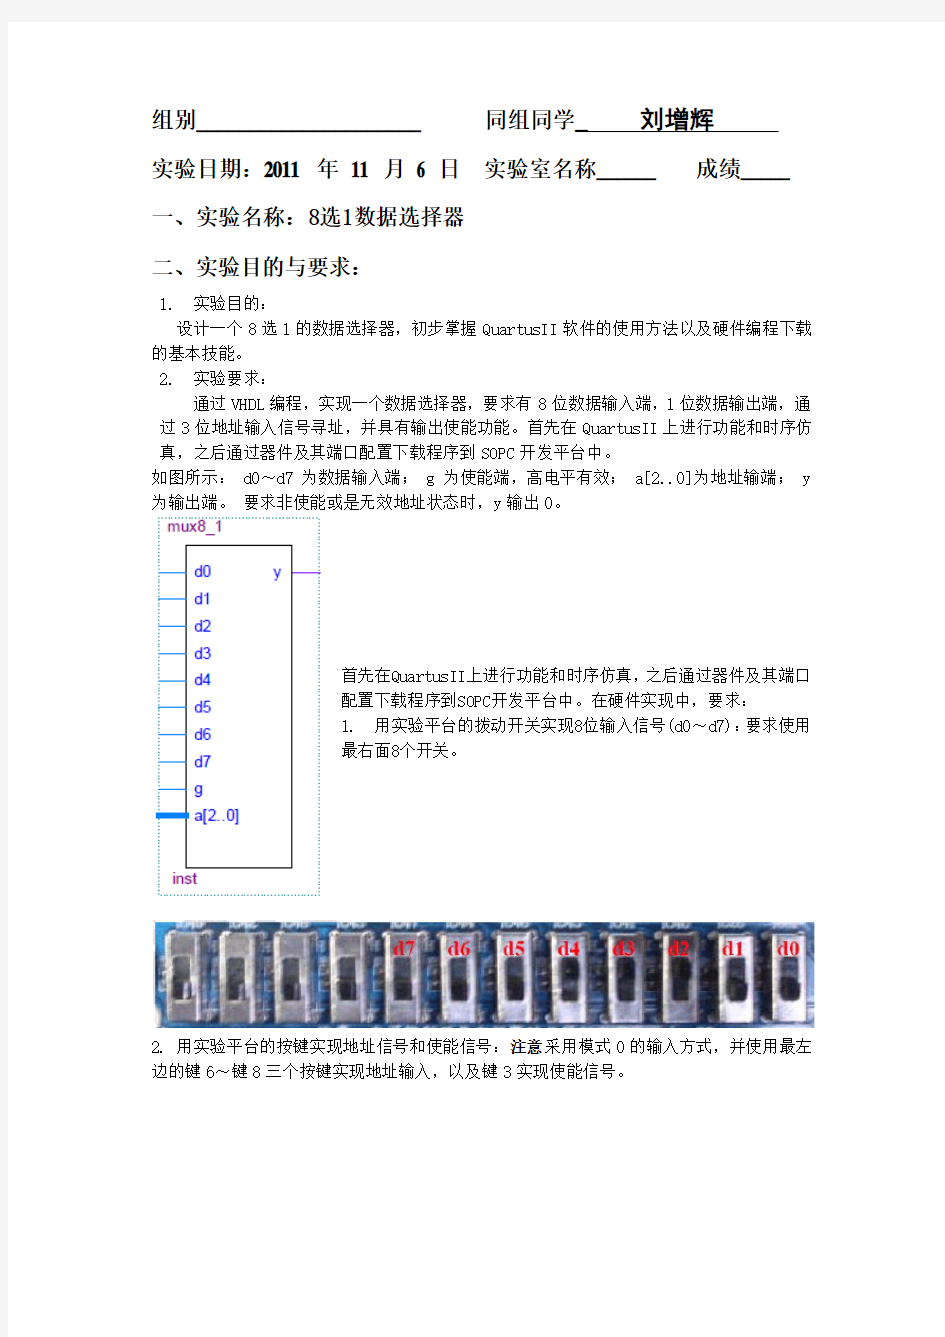 黄红涛-vhdl实验报告-实验1 8选1数据选择器